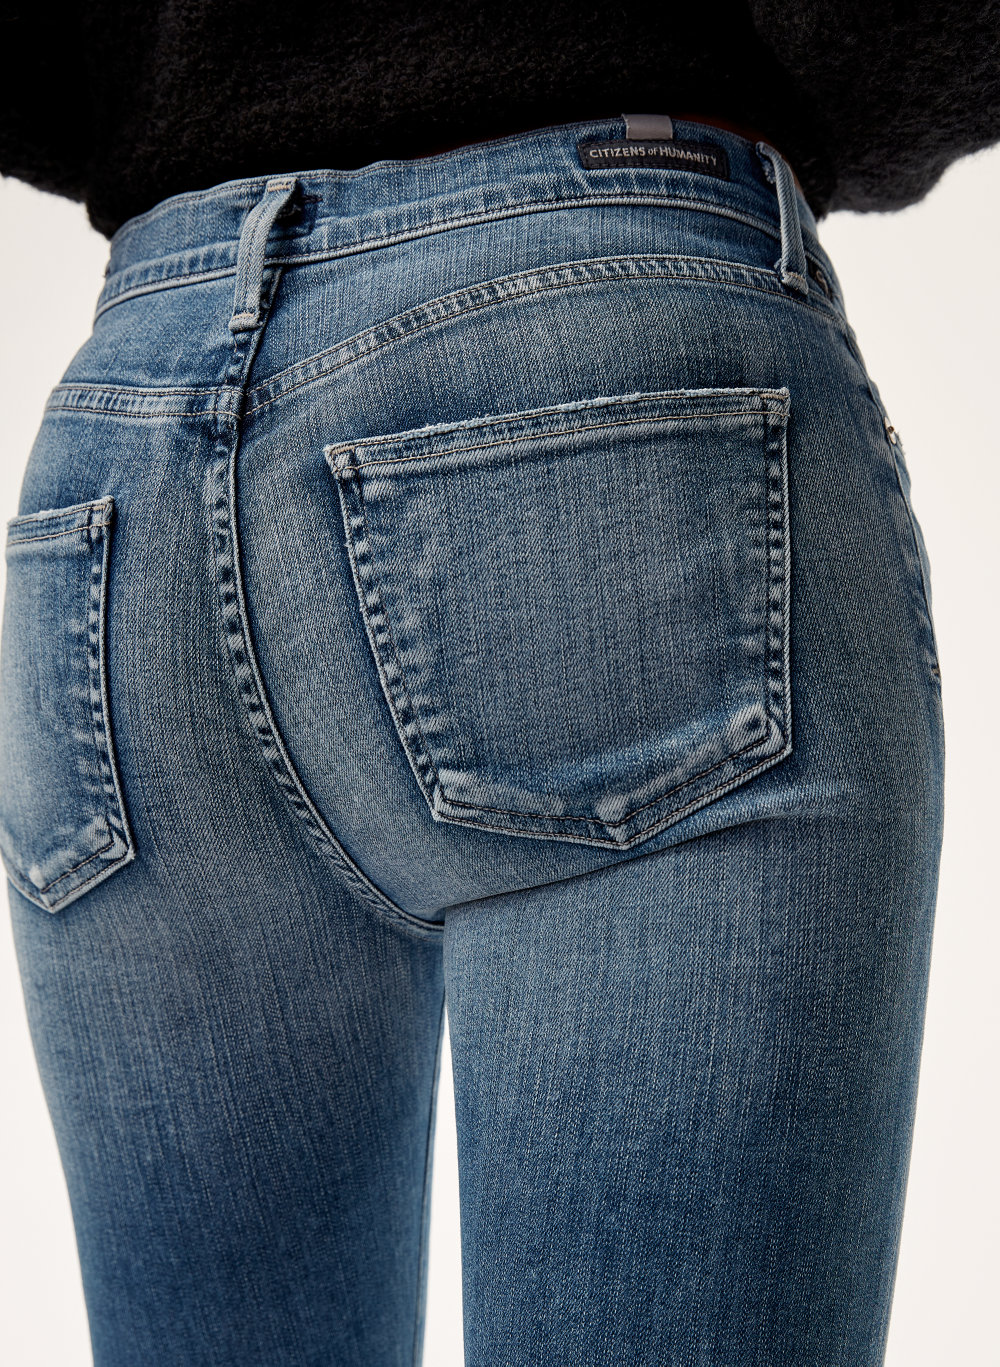 Aura Jeans Size Chart